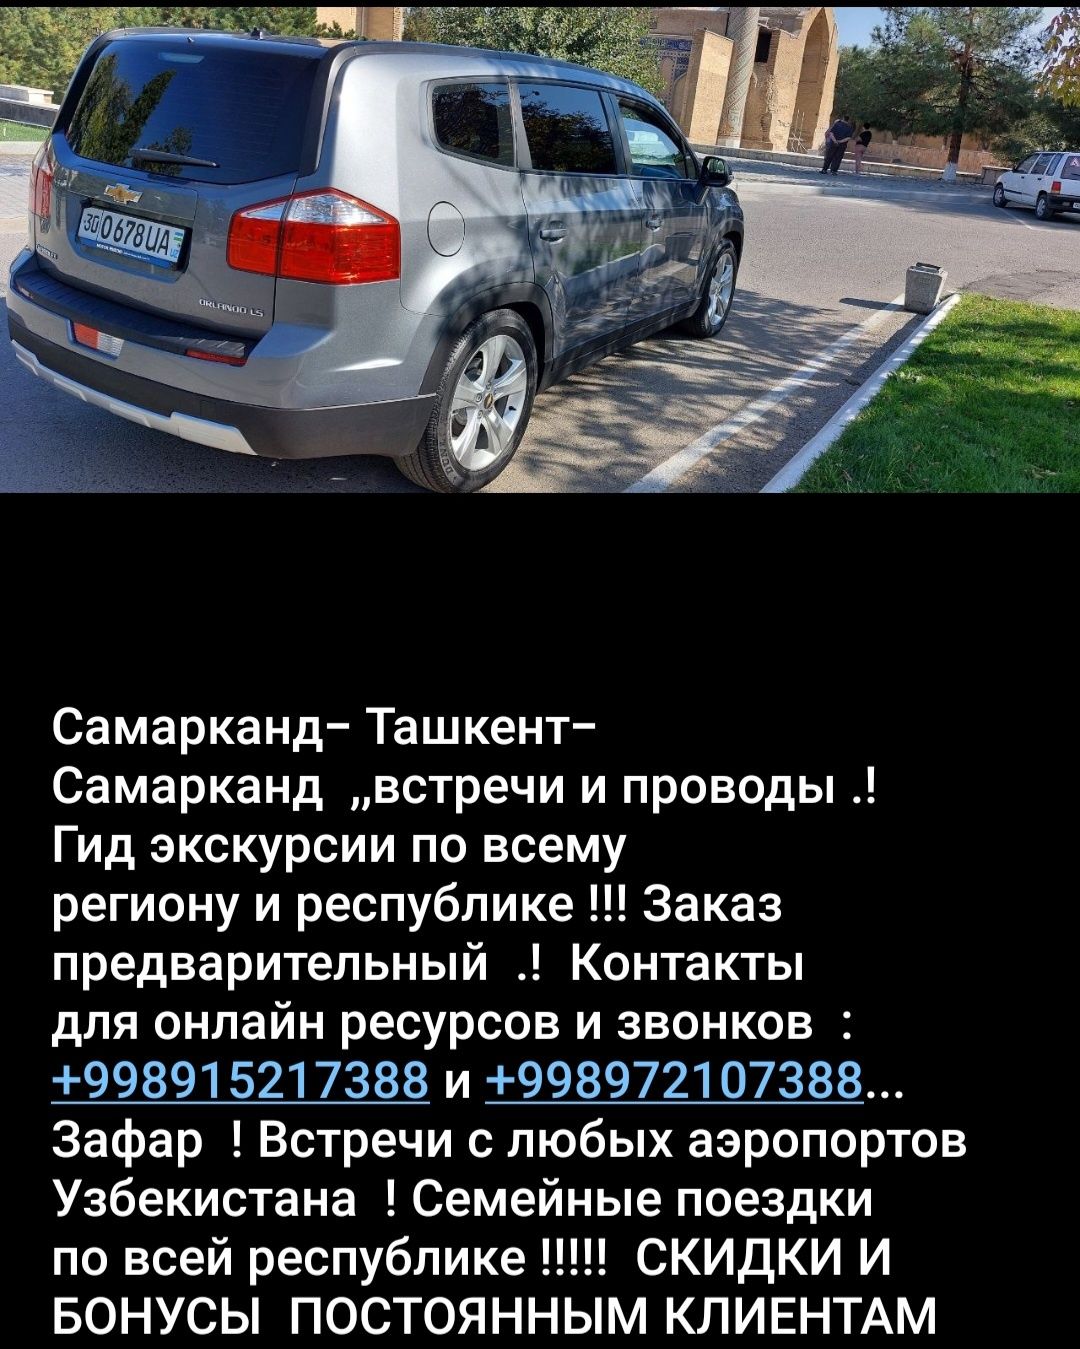 Межгород Ташкент-Самарканд  такси